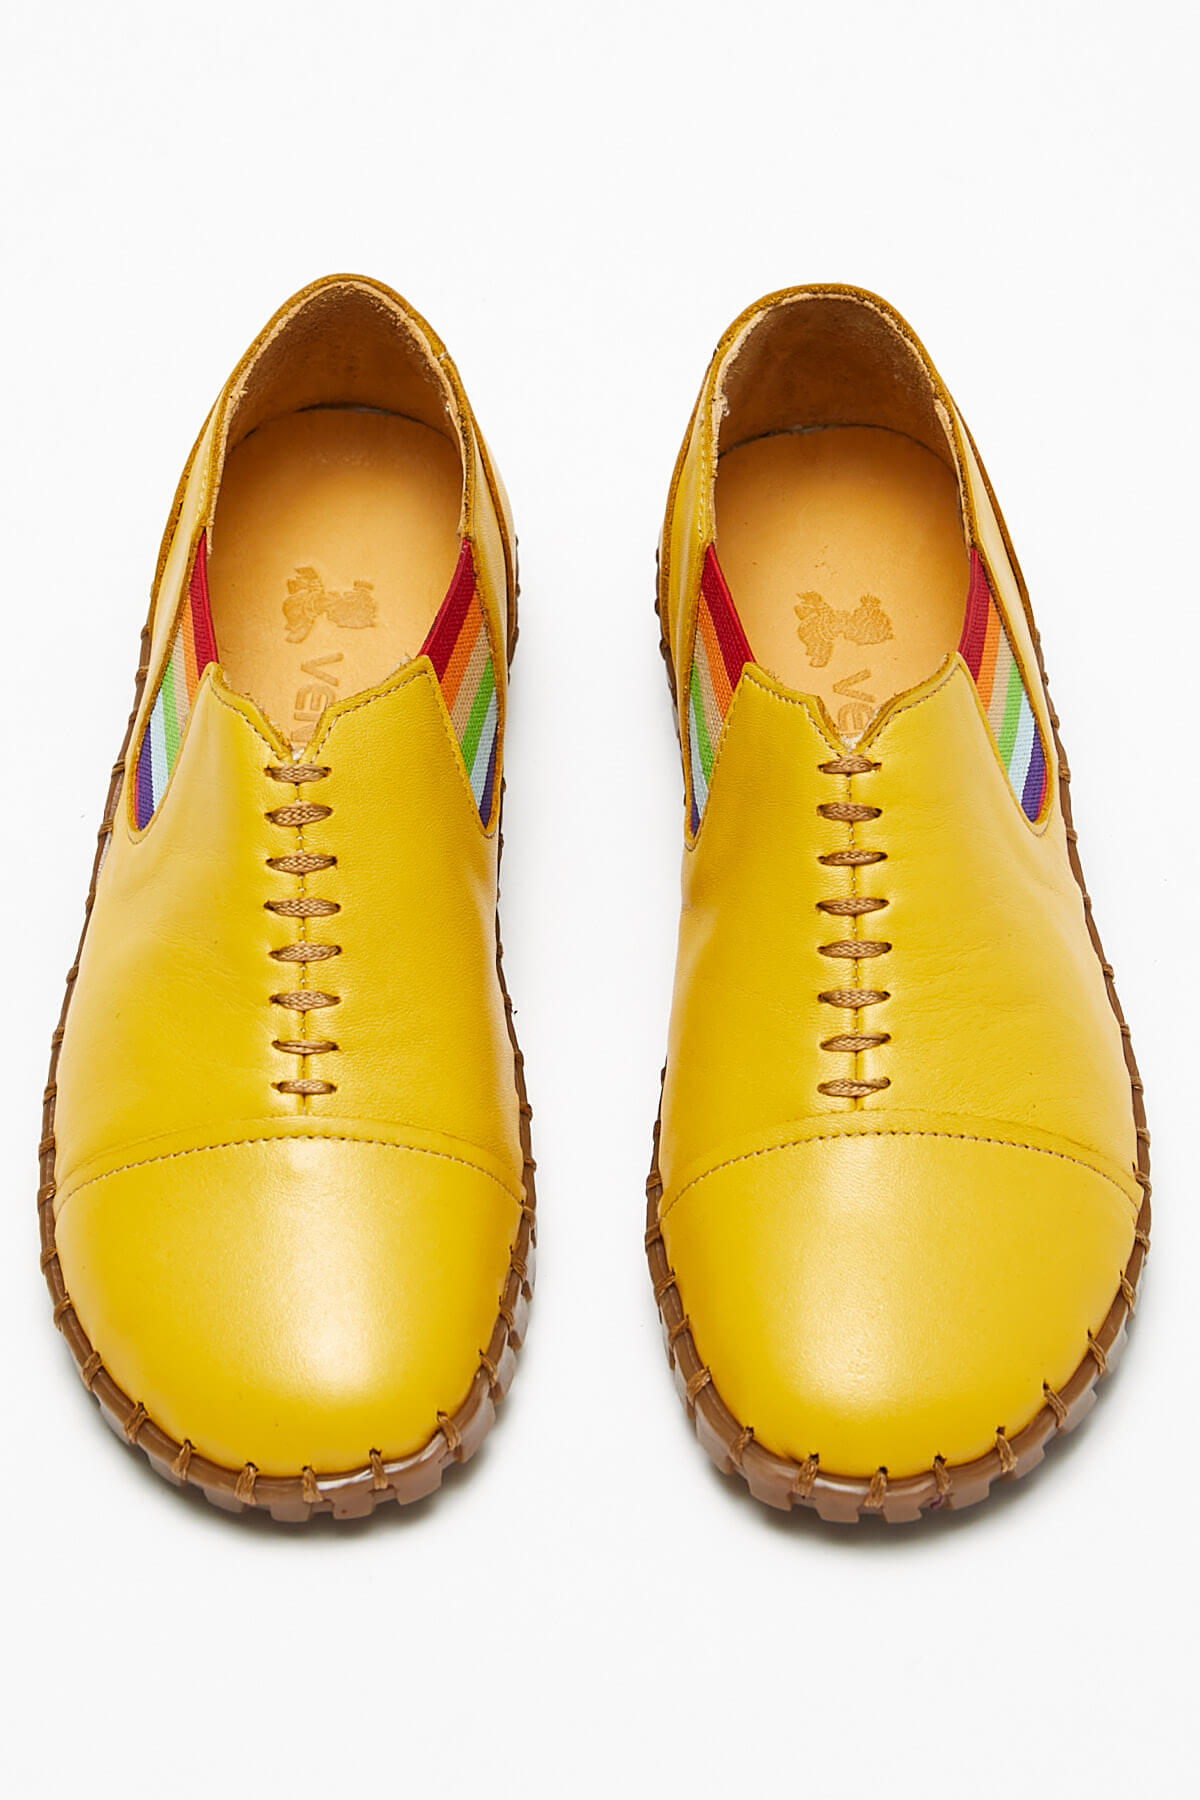 Kadın Comfort Ayakkabı Sarı 2010703Y - Thumbnail